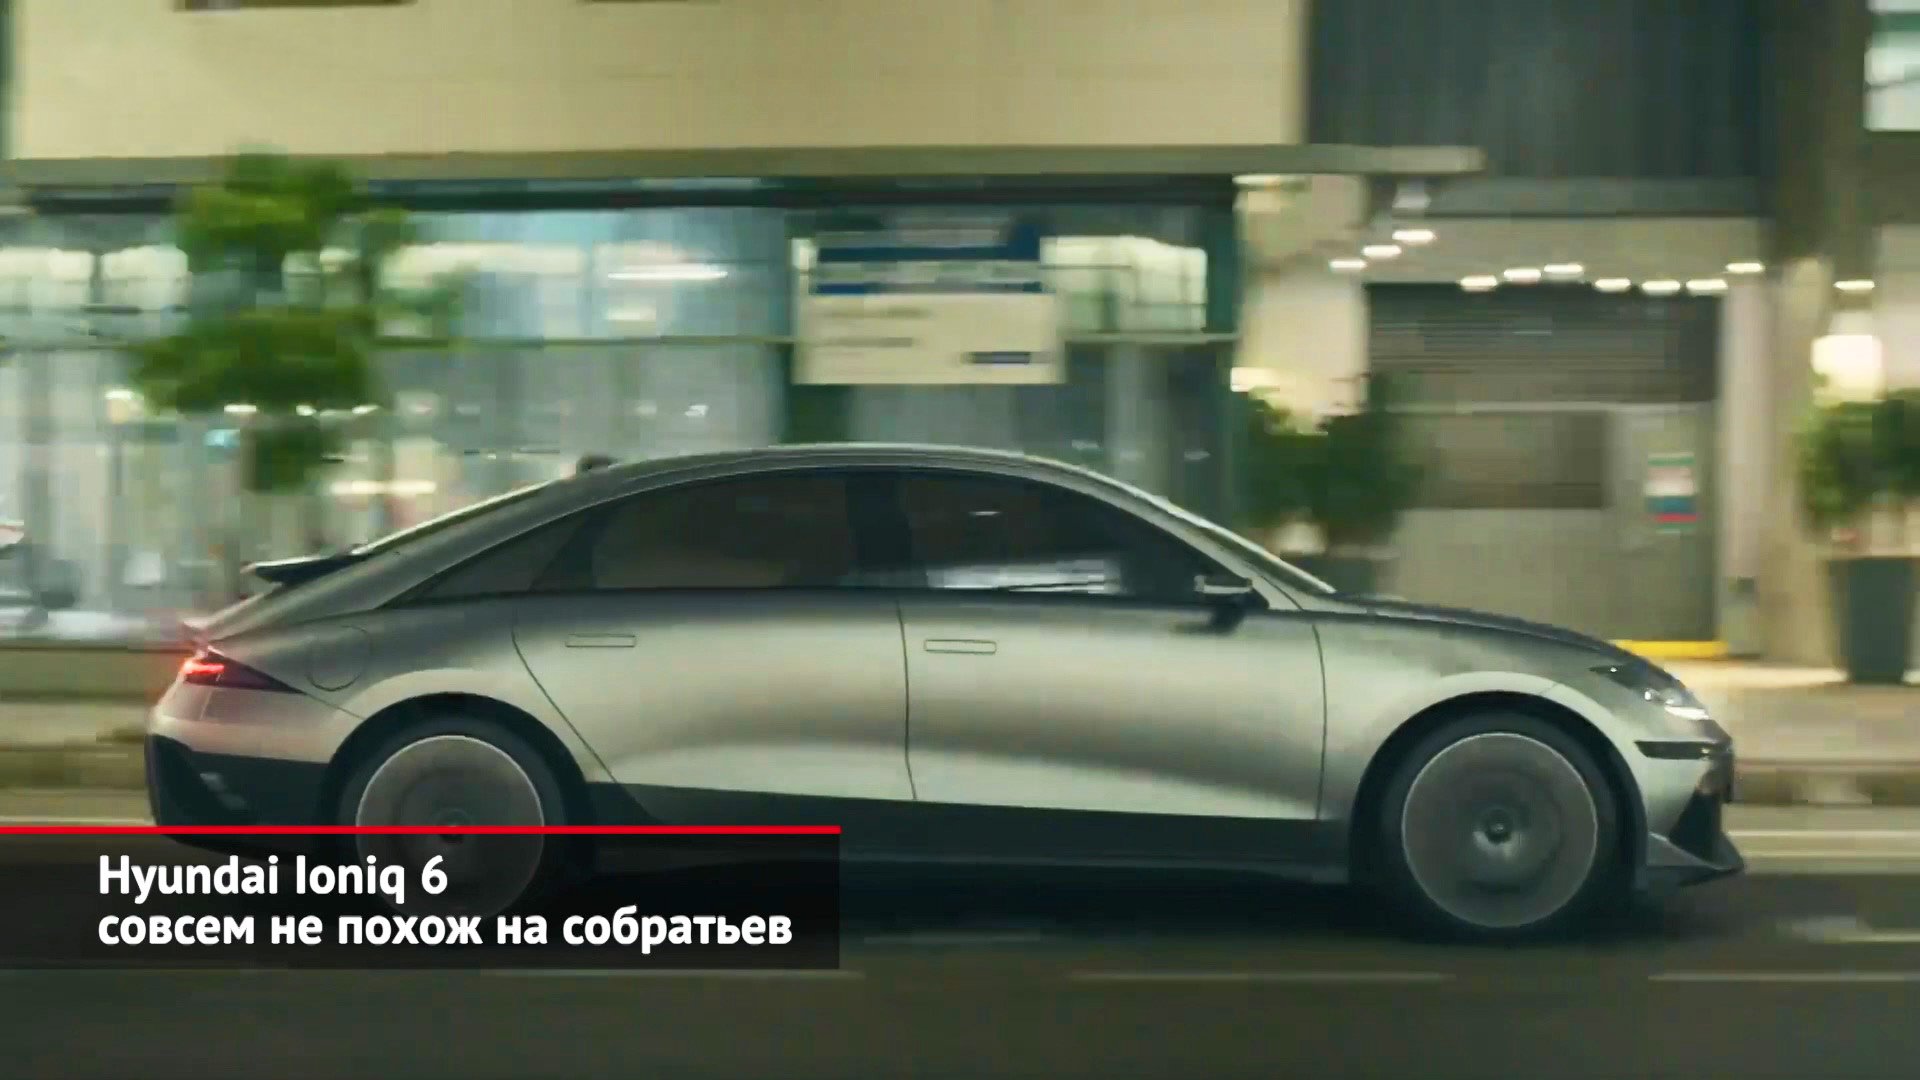 Hyundai Ioniq 6 не похож на собратьев. Kia Seltos предстал в новом облике | Новости с колёс №2117